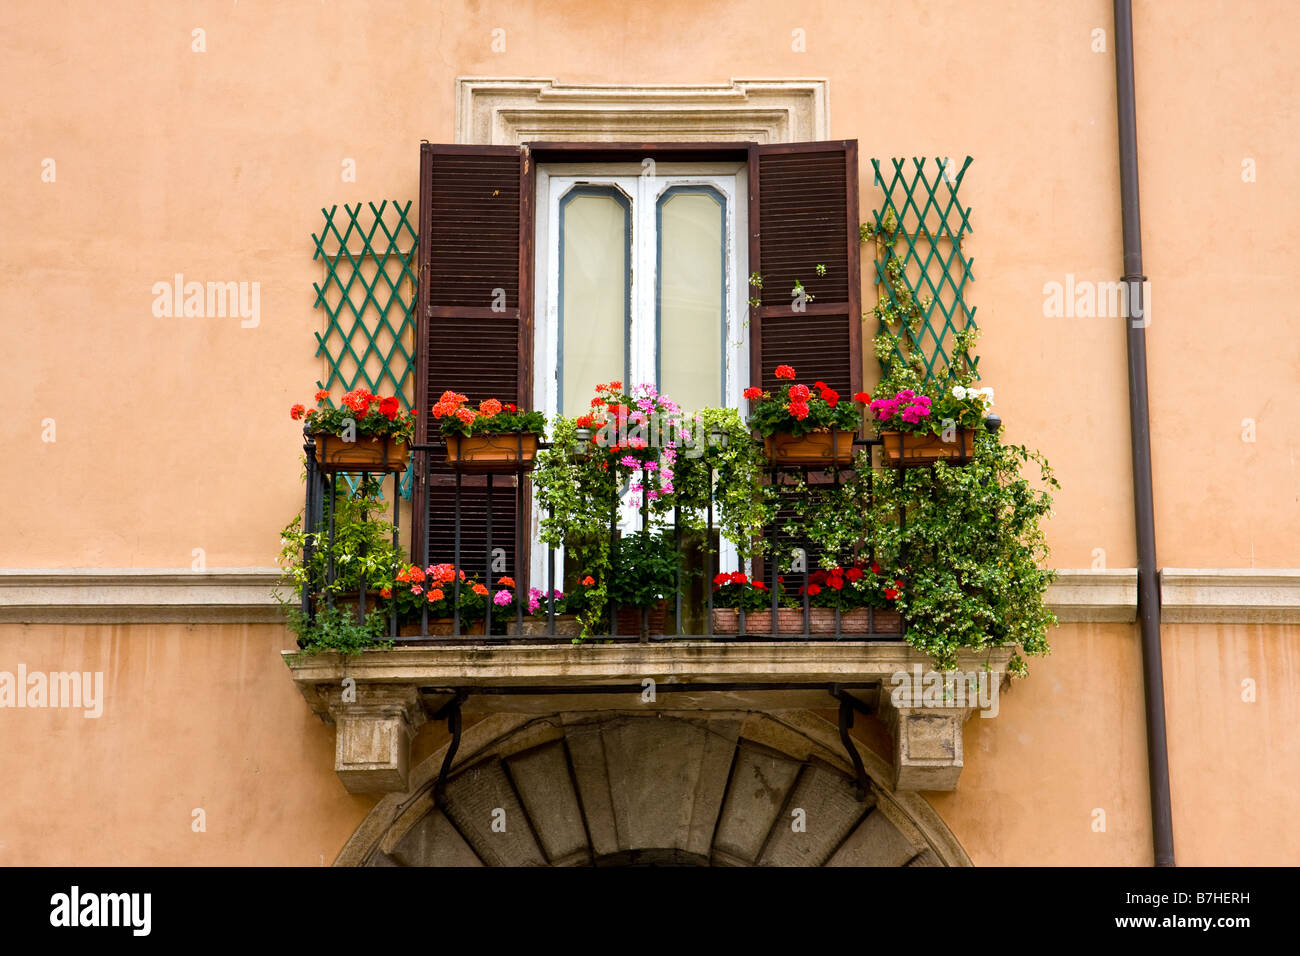 Balcone d italia immagini e fotografie stock ad alta risoluzione - Alamy